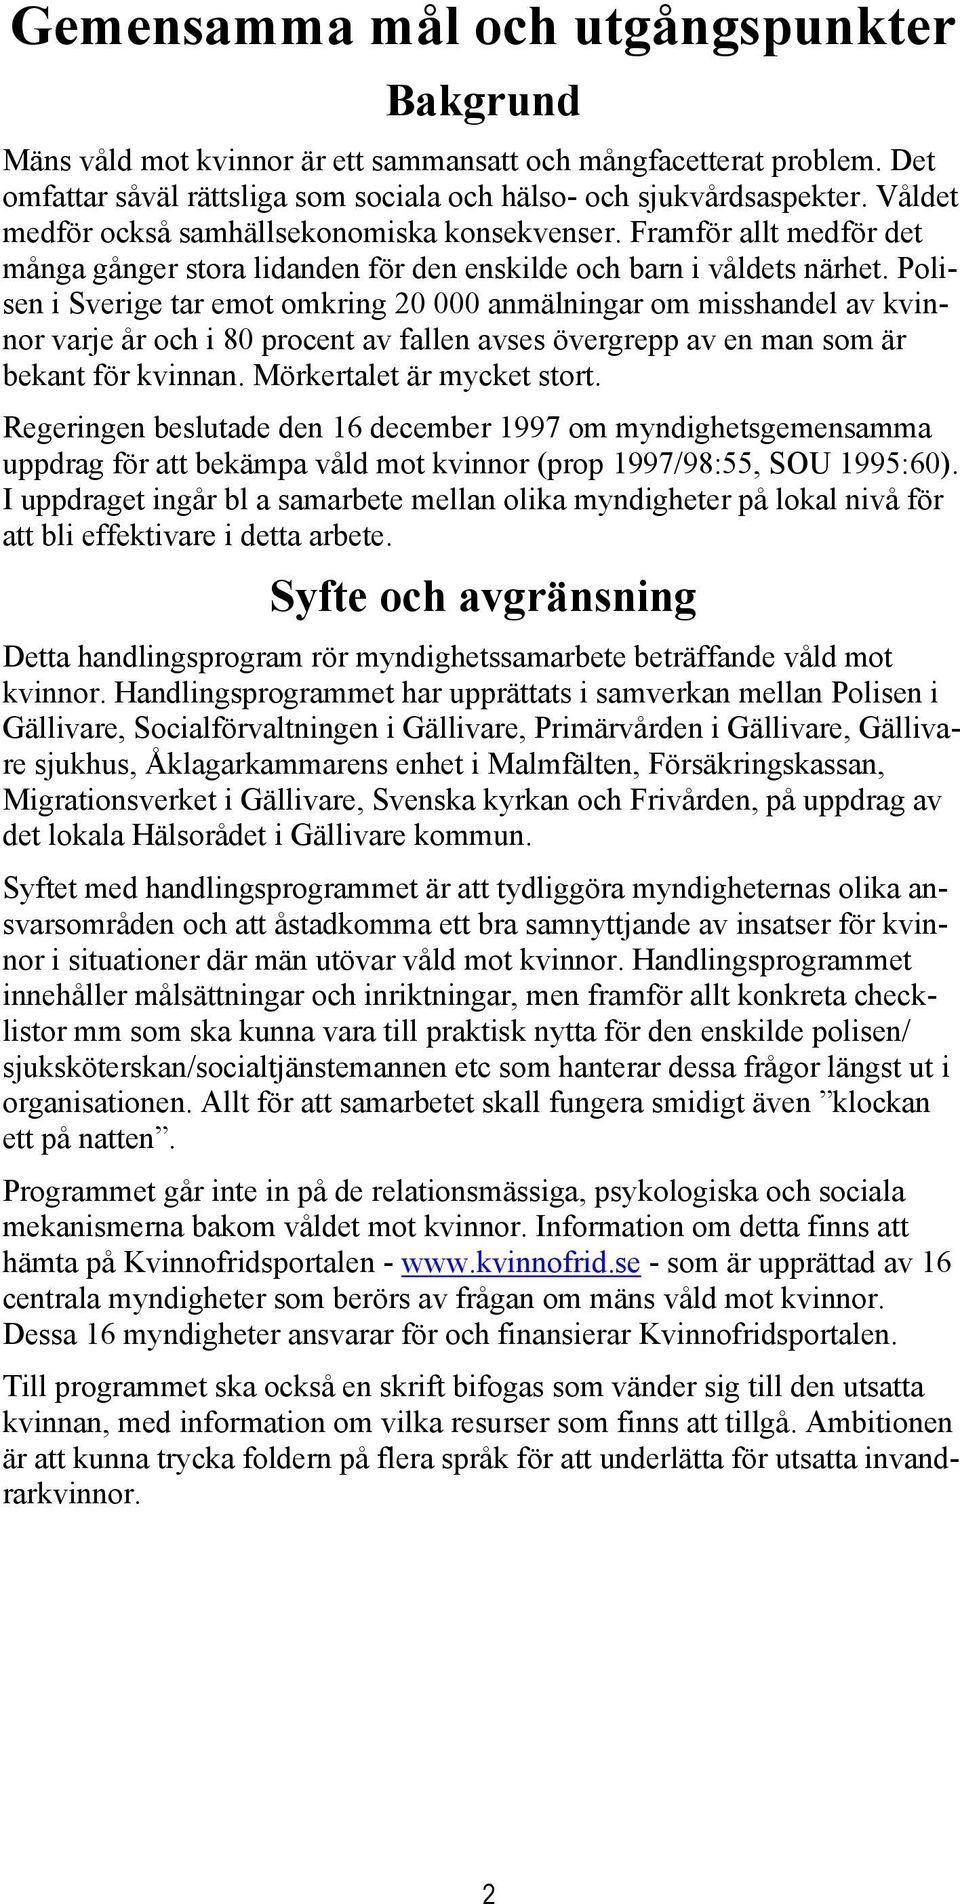 Polisen i Sverige tar emot omkring 20 000 anmälningar om misshandel av kvinnor varje år och i 80 procent av fallen avses övergrepp av en man som är bekant för kvinnan. Mörkertalet är mycket stort.